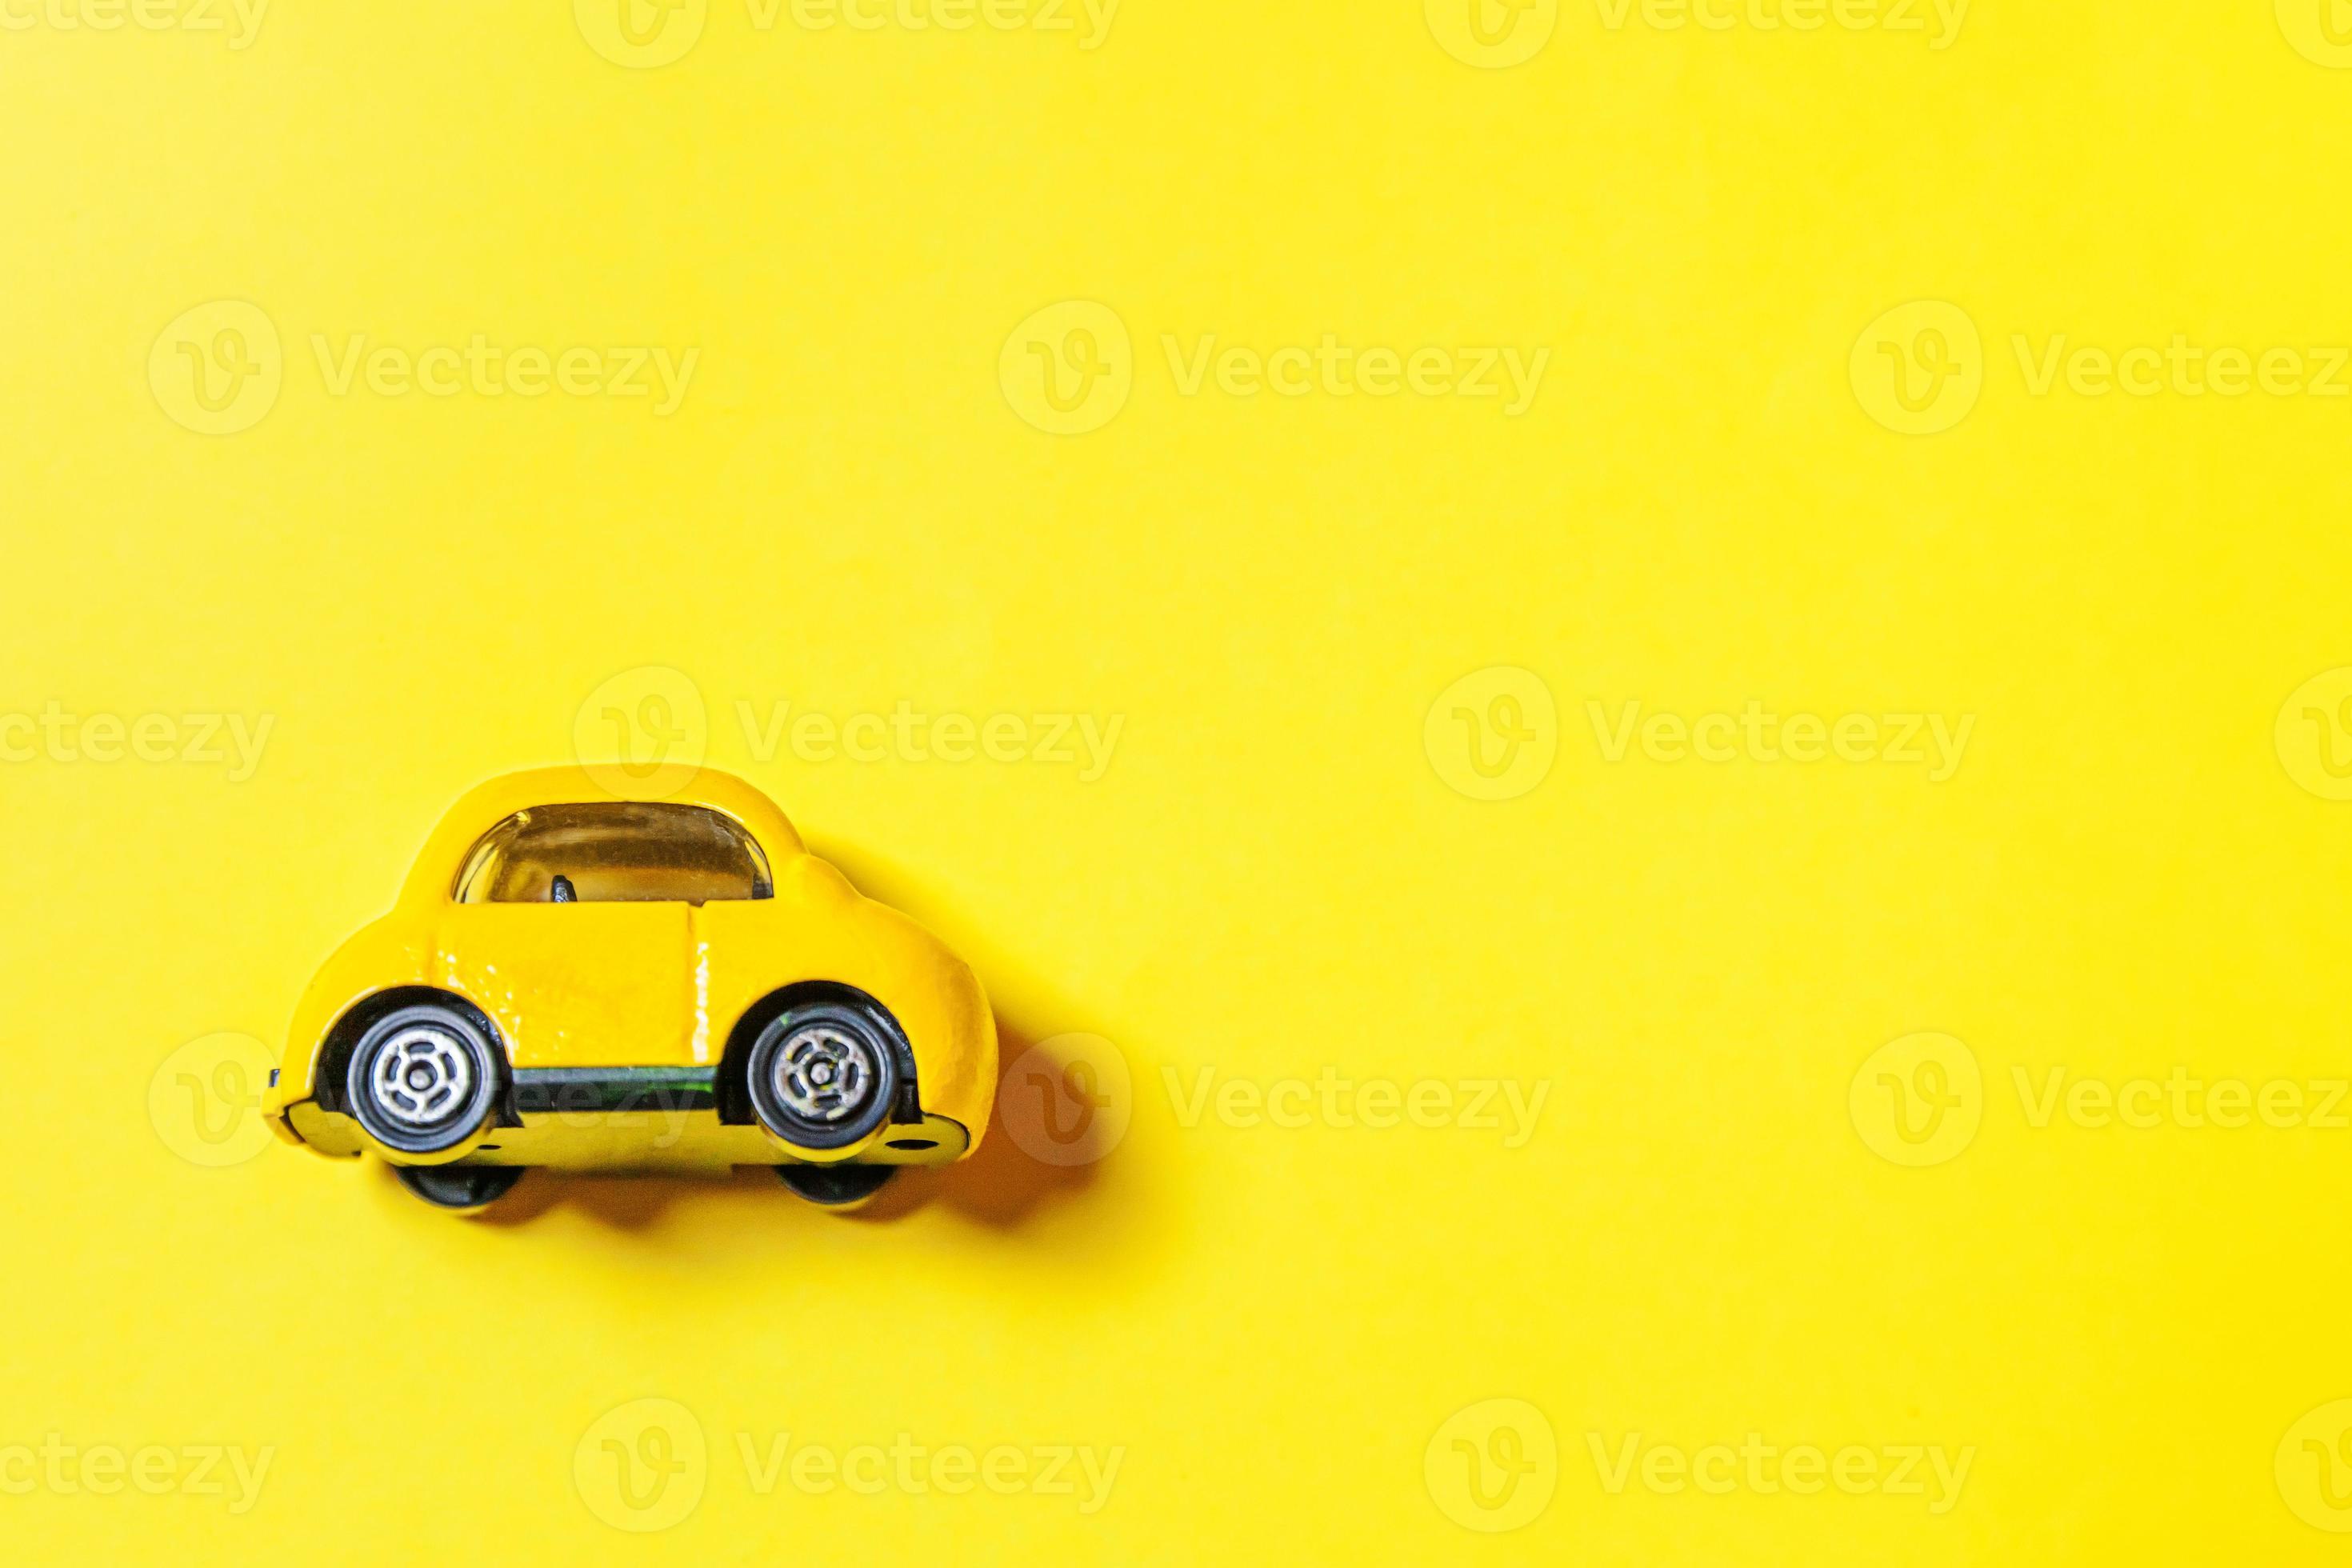 ontwerp eenvoudig gele vintage retro speelgoedauto geïsoleerd op gele achtergrond. auto- en transportsymbool. stadsverkeer levering concept kopie ruimte foto